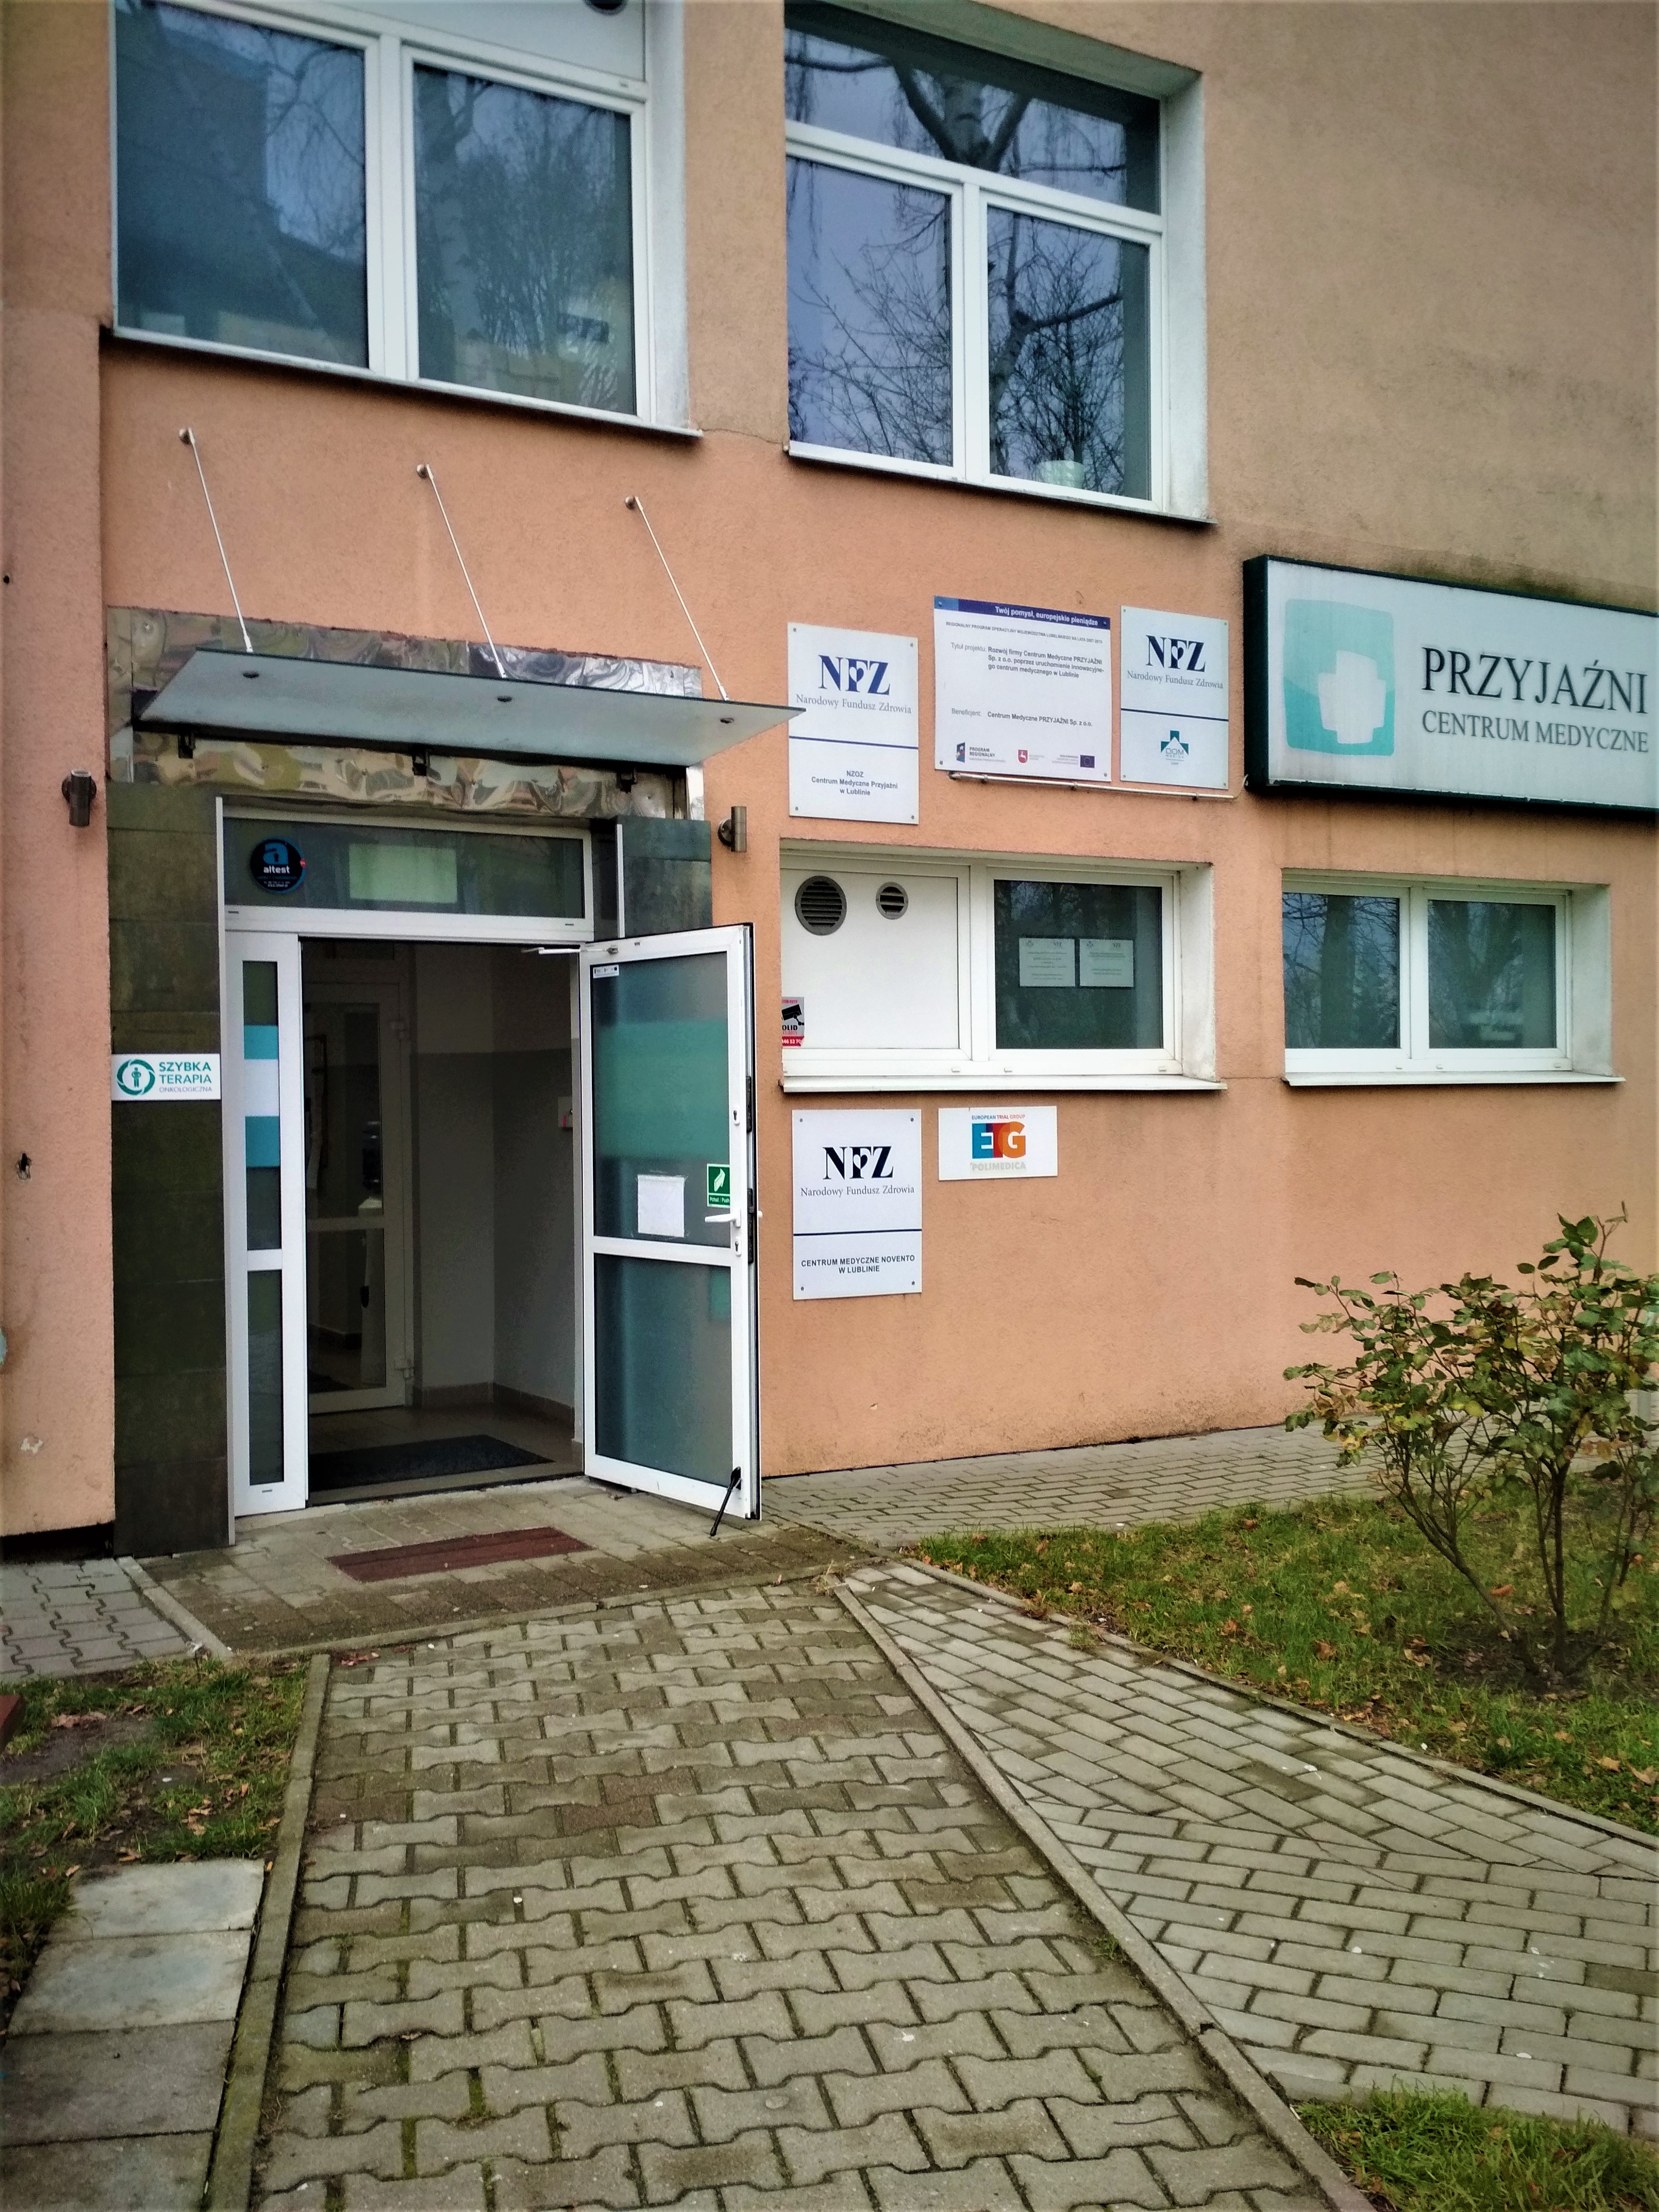 Poradnia dietetyczna Lublin - Centrum Medyczne Przyjaźni Lublin